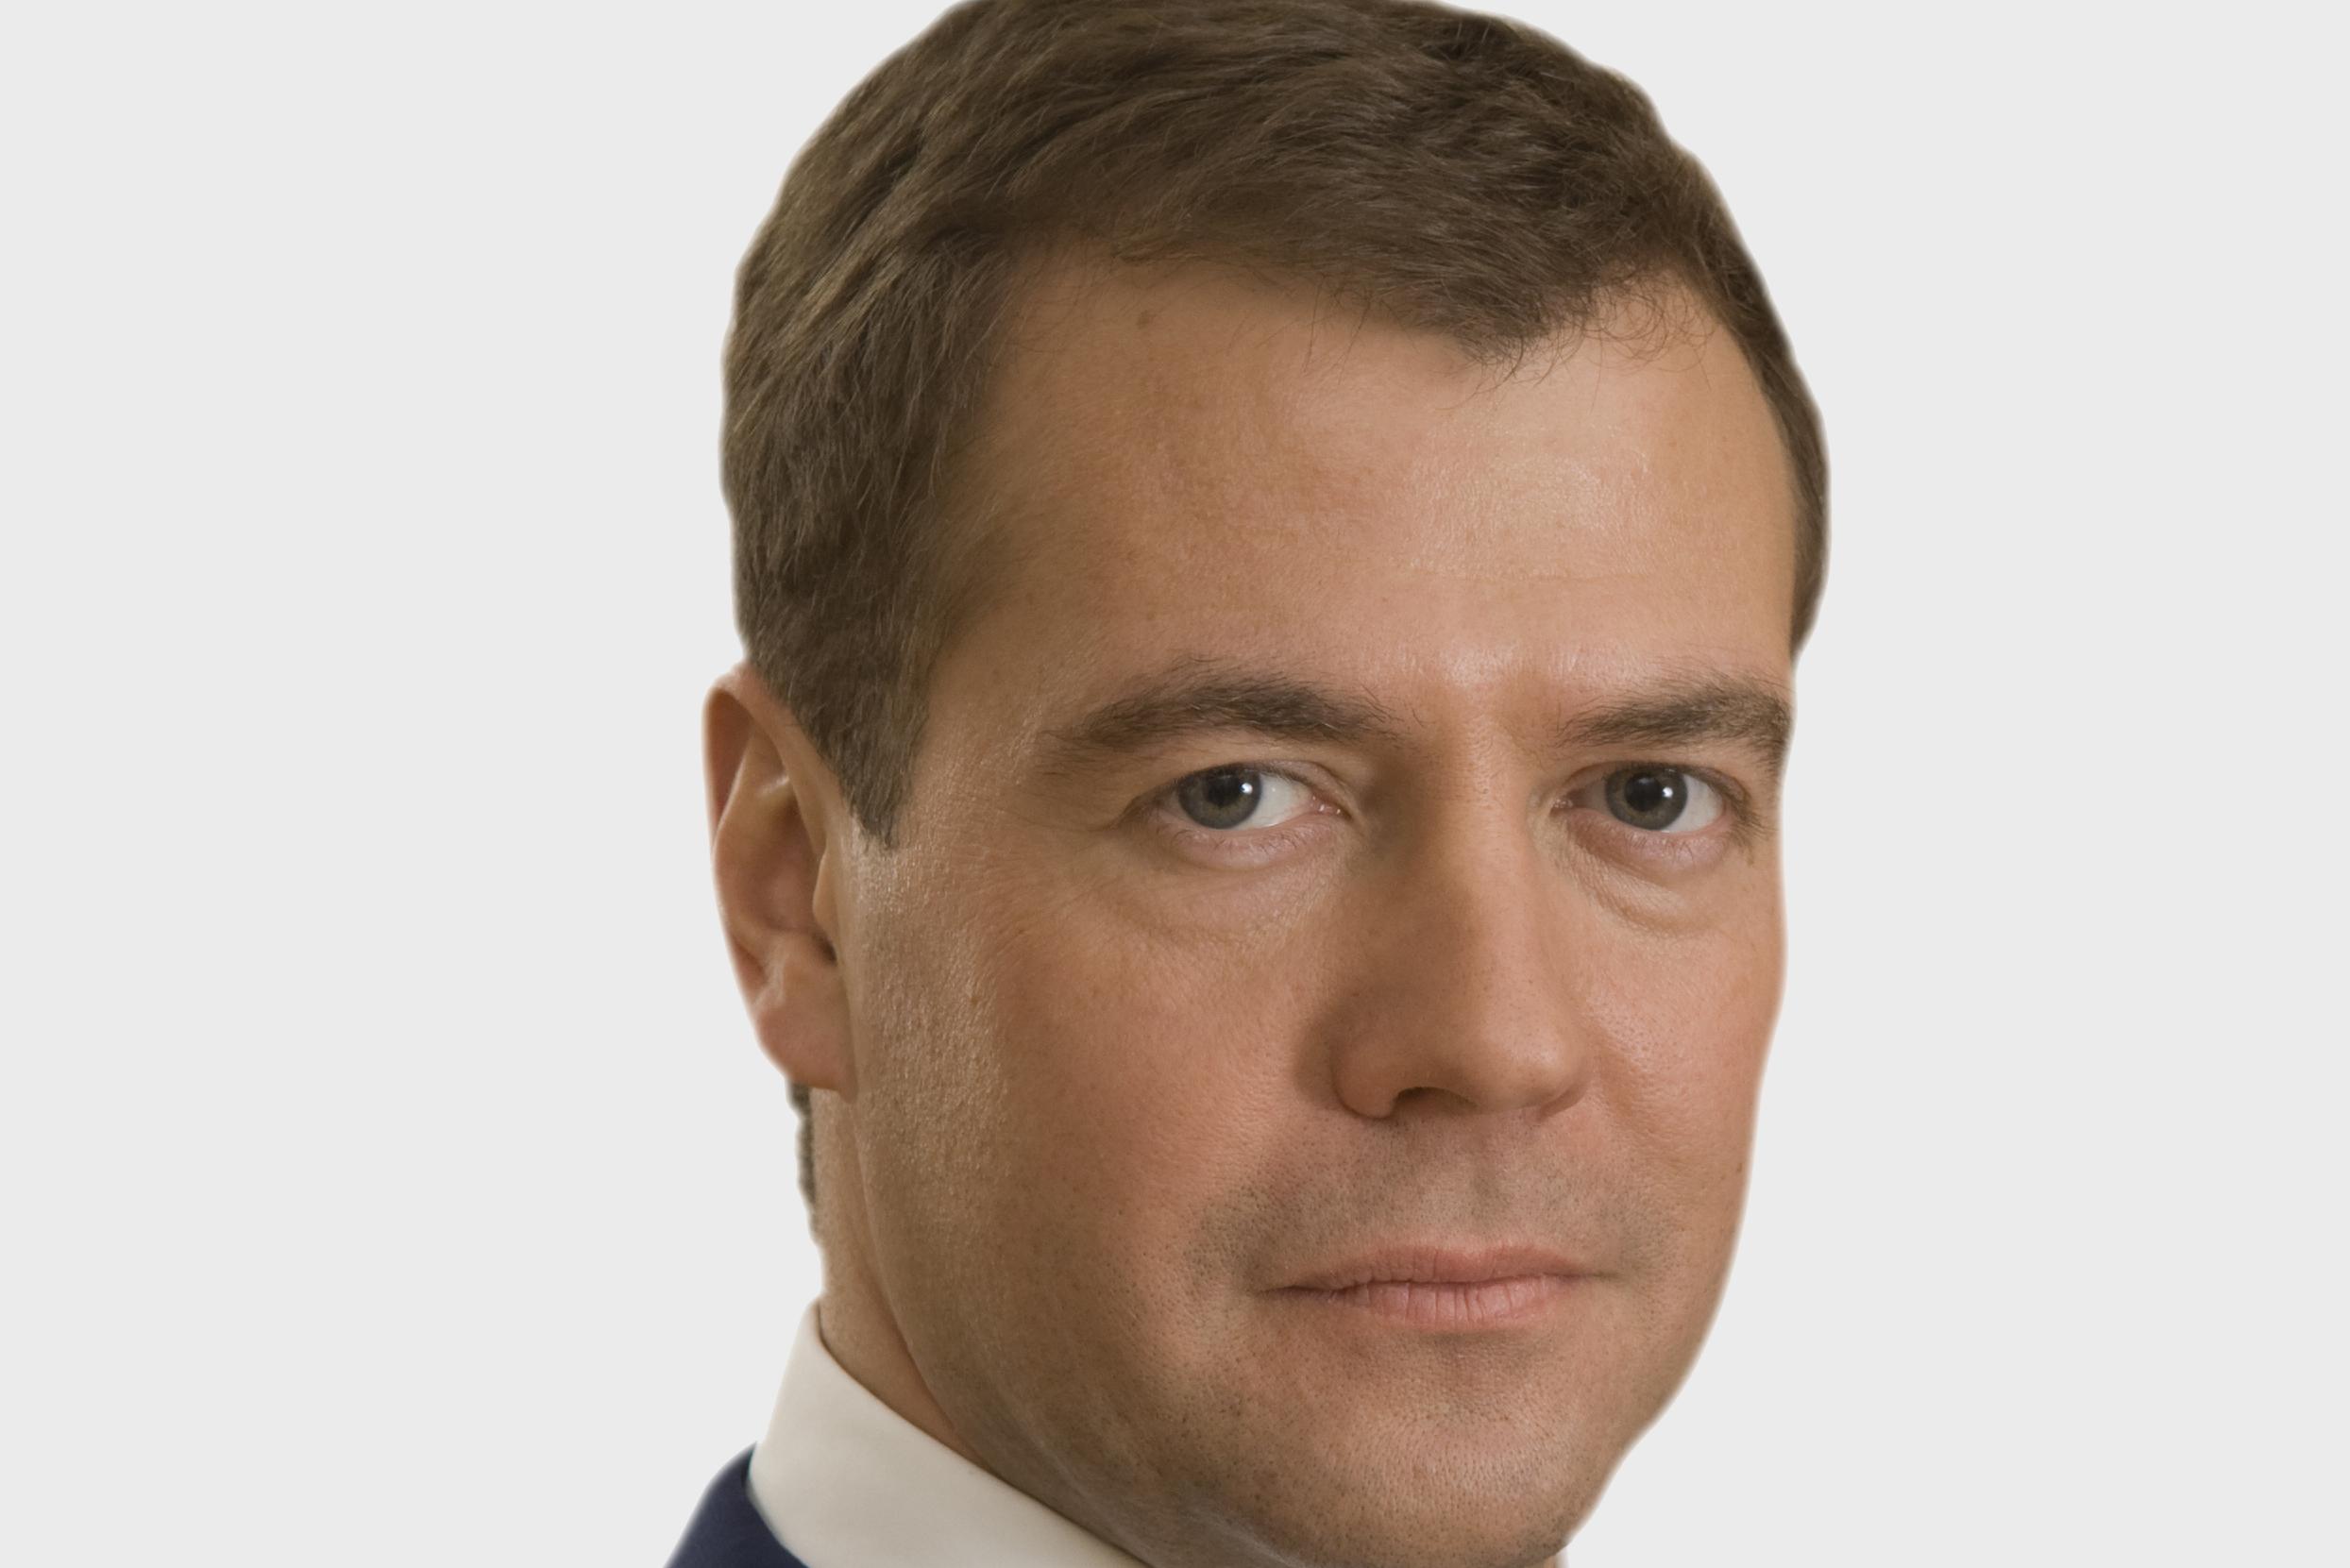 Секретная дача Дмитрия Медведева